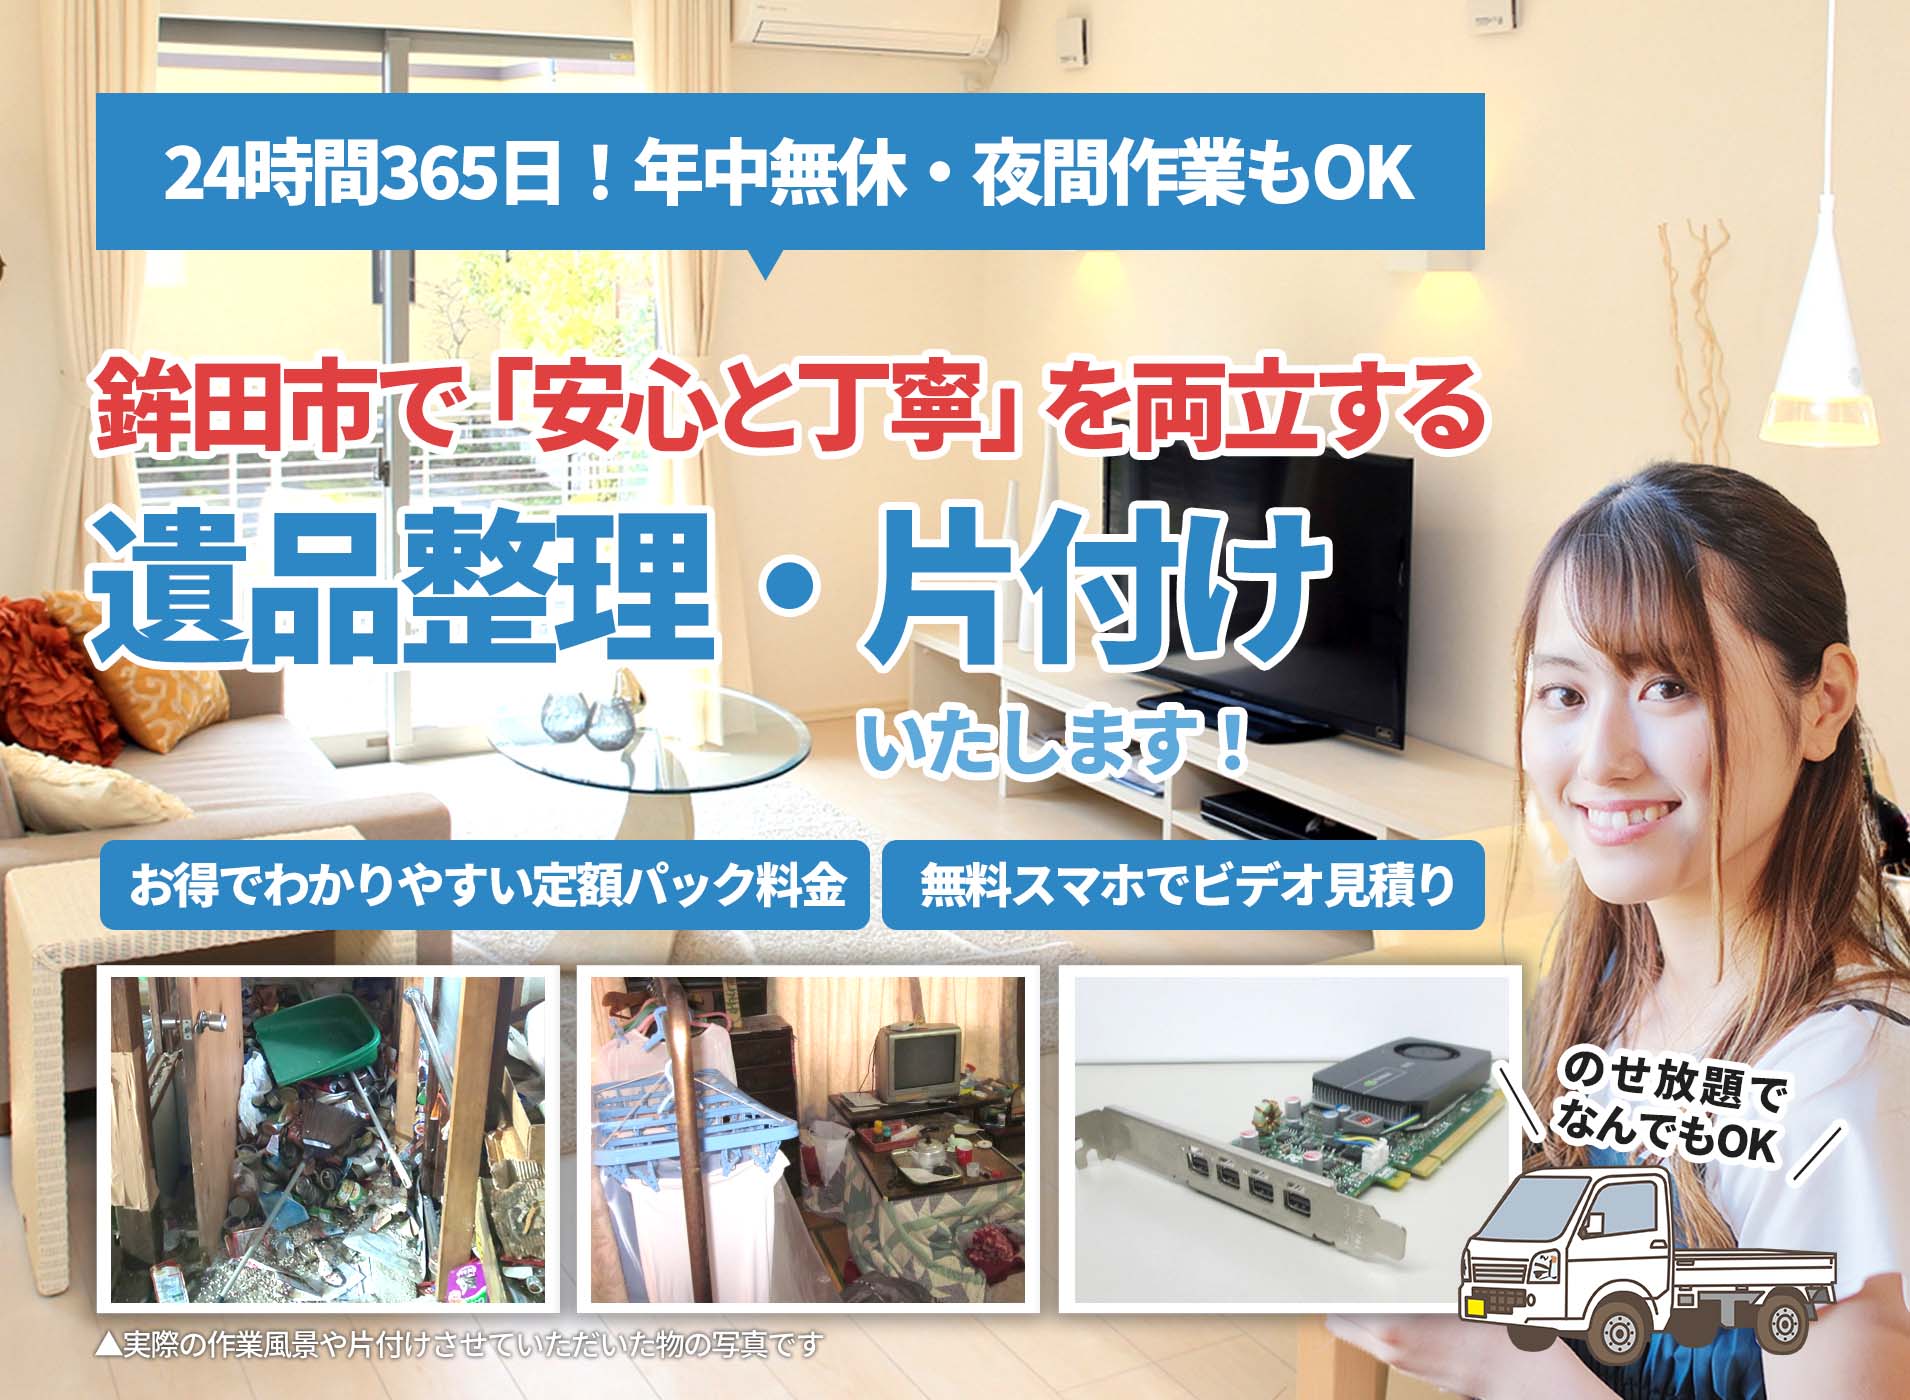 鉾田市で「安心と丁寧」を両立するＬＴＪ遺品整理隊の遺品整理サービス